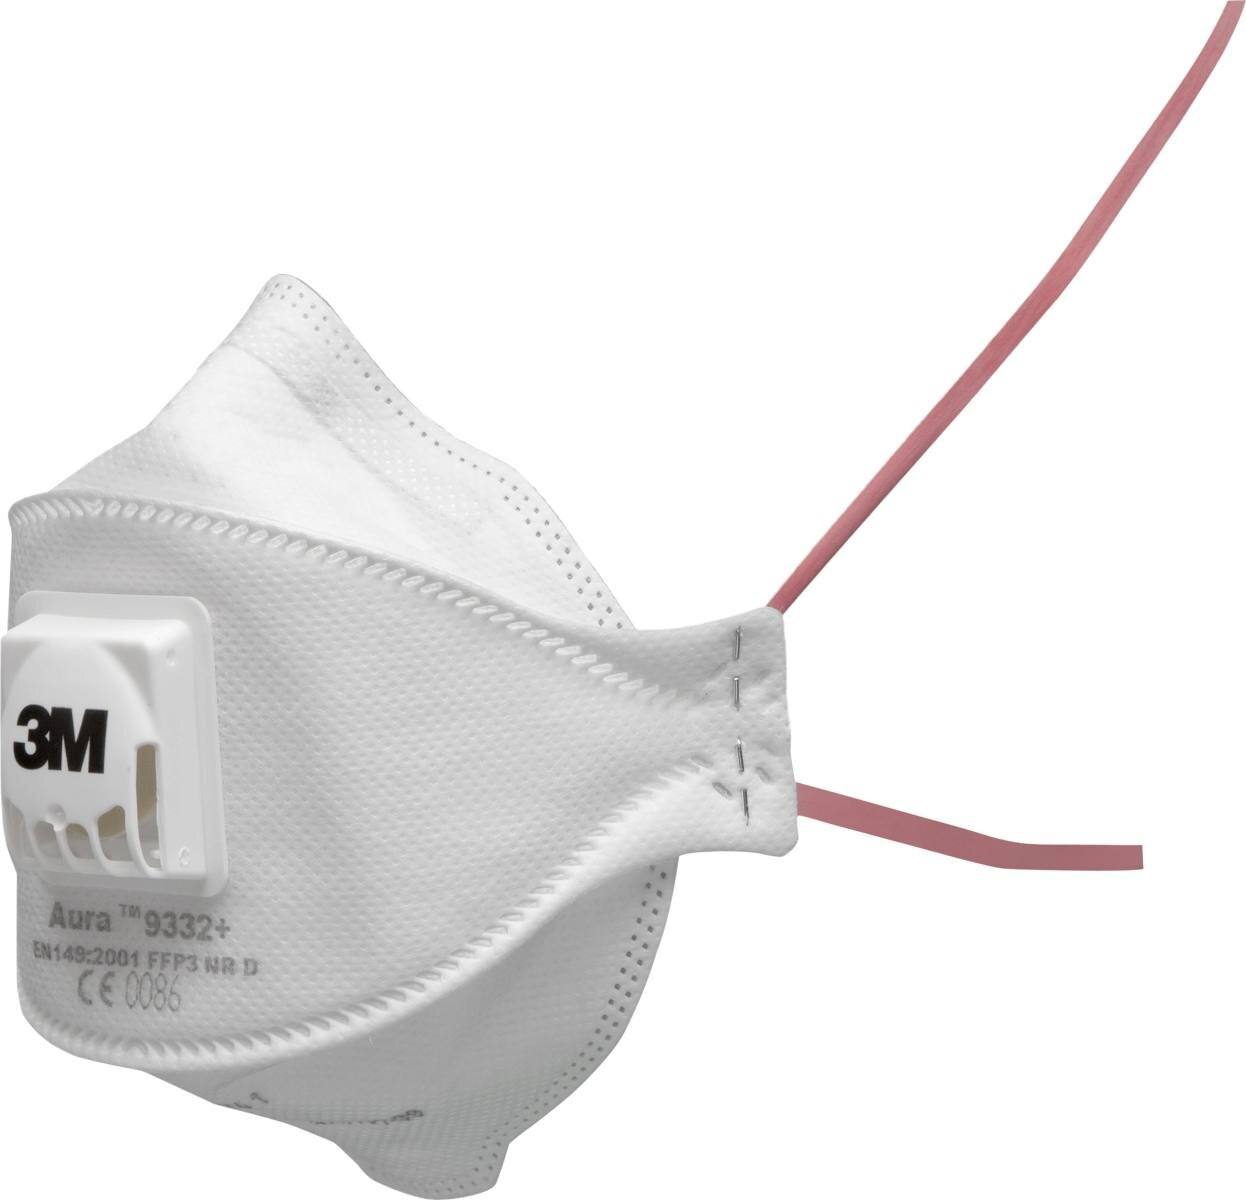 3M 9332+SV Aura Atemschutzmaske FFP3 mit Cool-Flow Ausatemventil, bis zum 30-fachen des Grenzwertes (hygienisch einzelverpackt), Kleinpackung